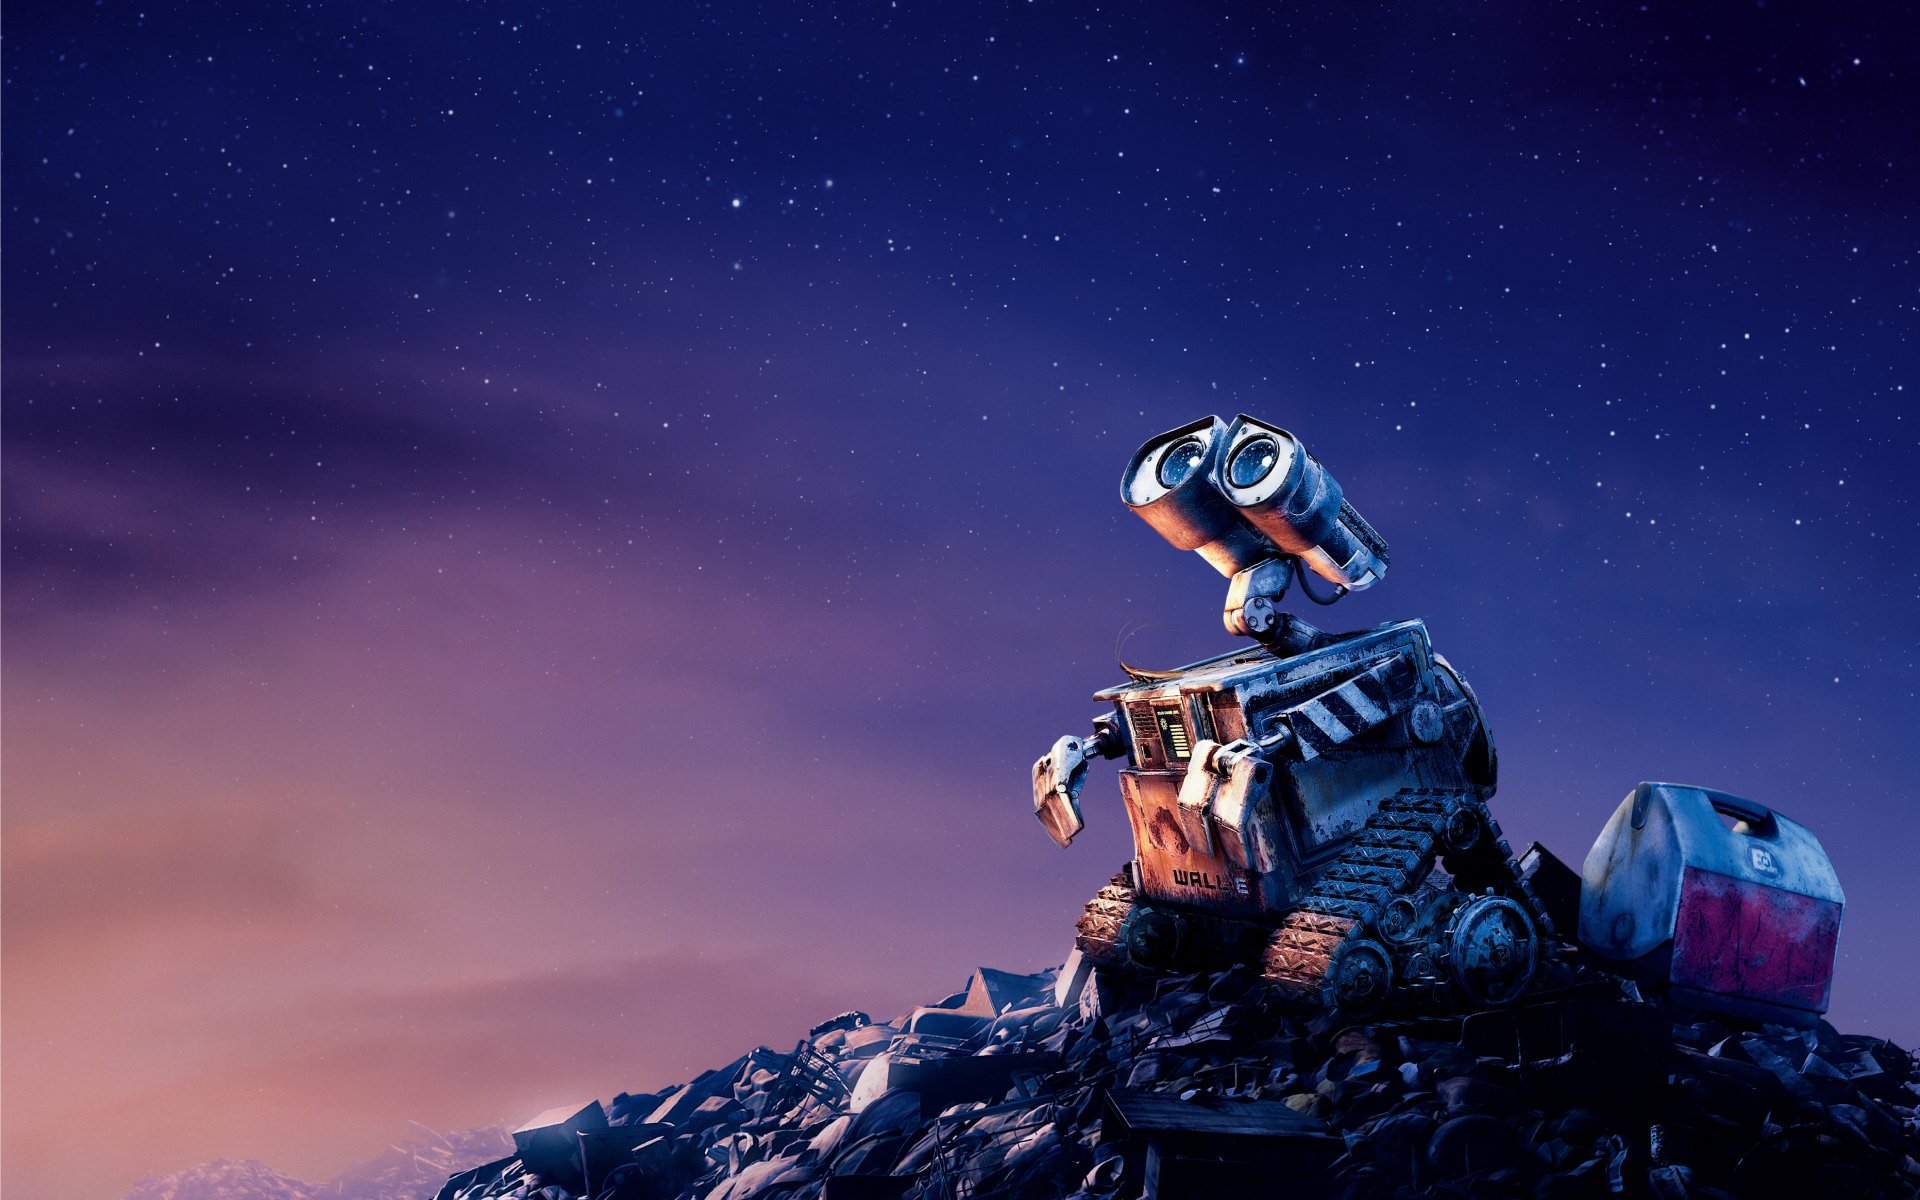 Wall-e full movie putlocker